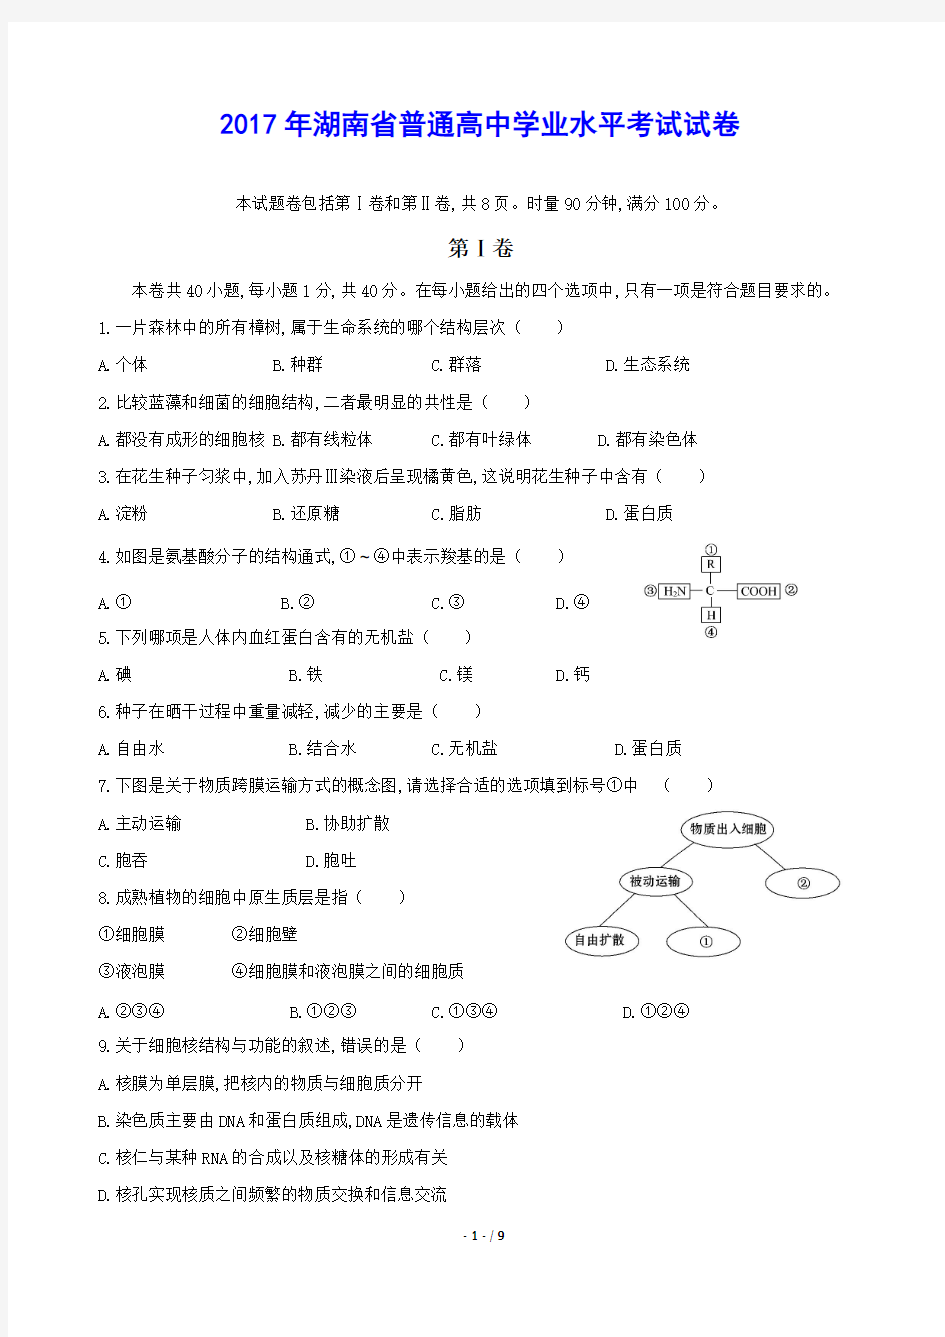 (完整版)2017年湖南省学业水平考试试卷(纯版含答案)